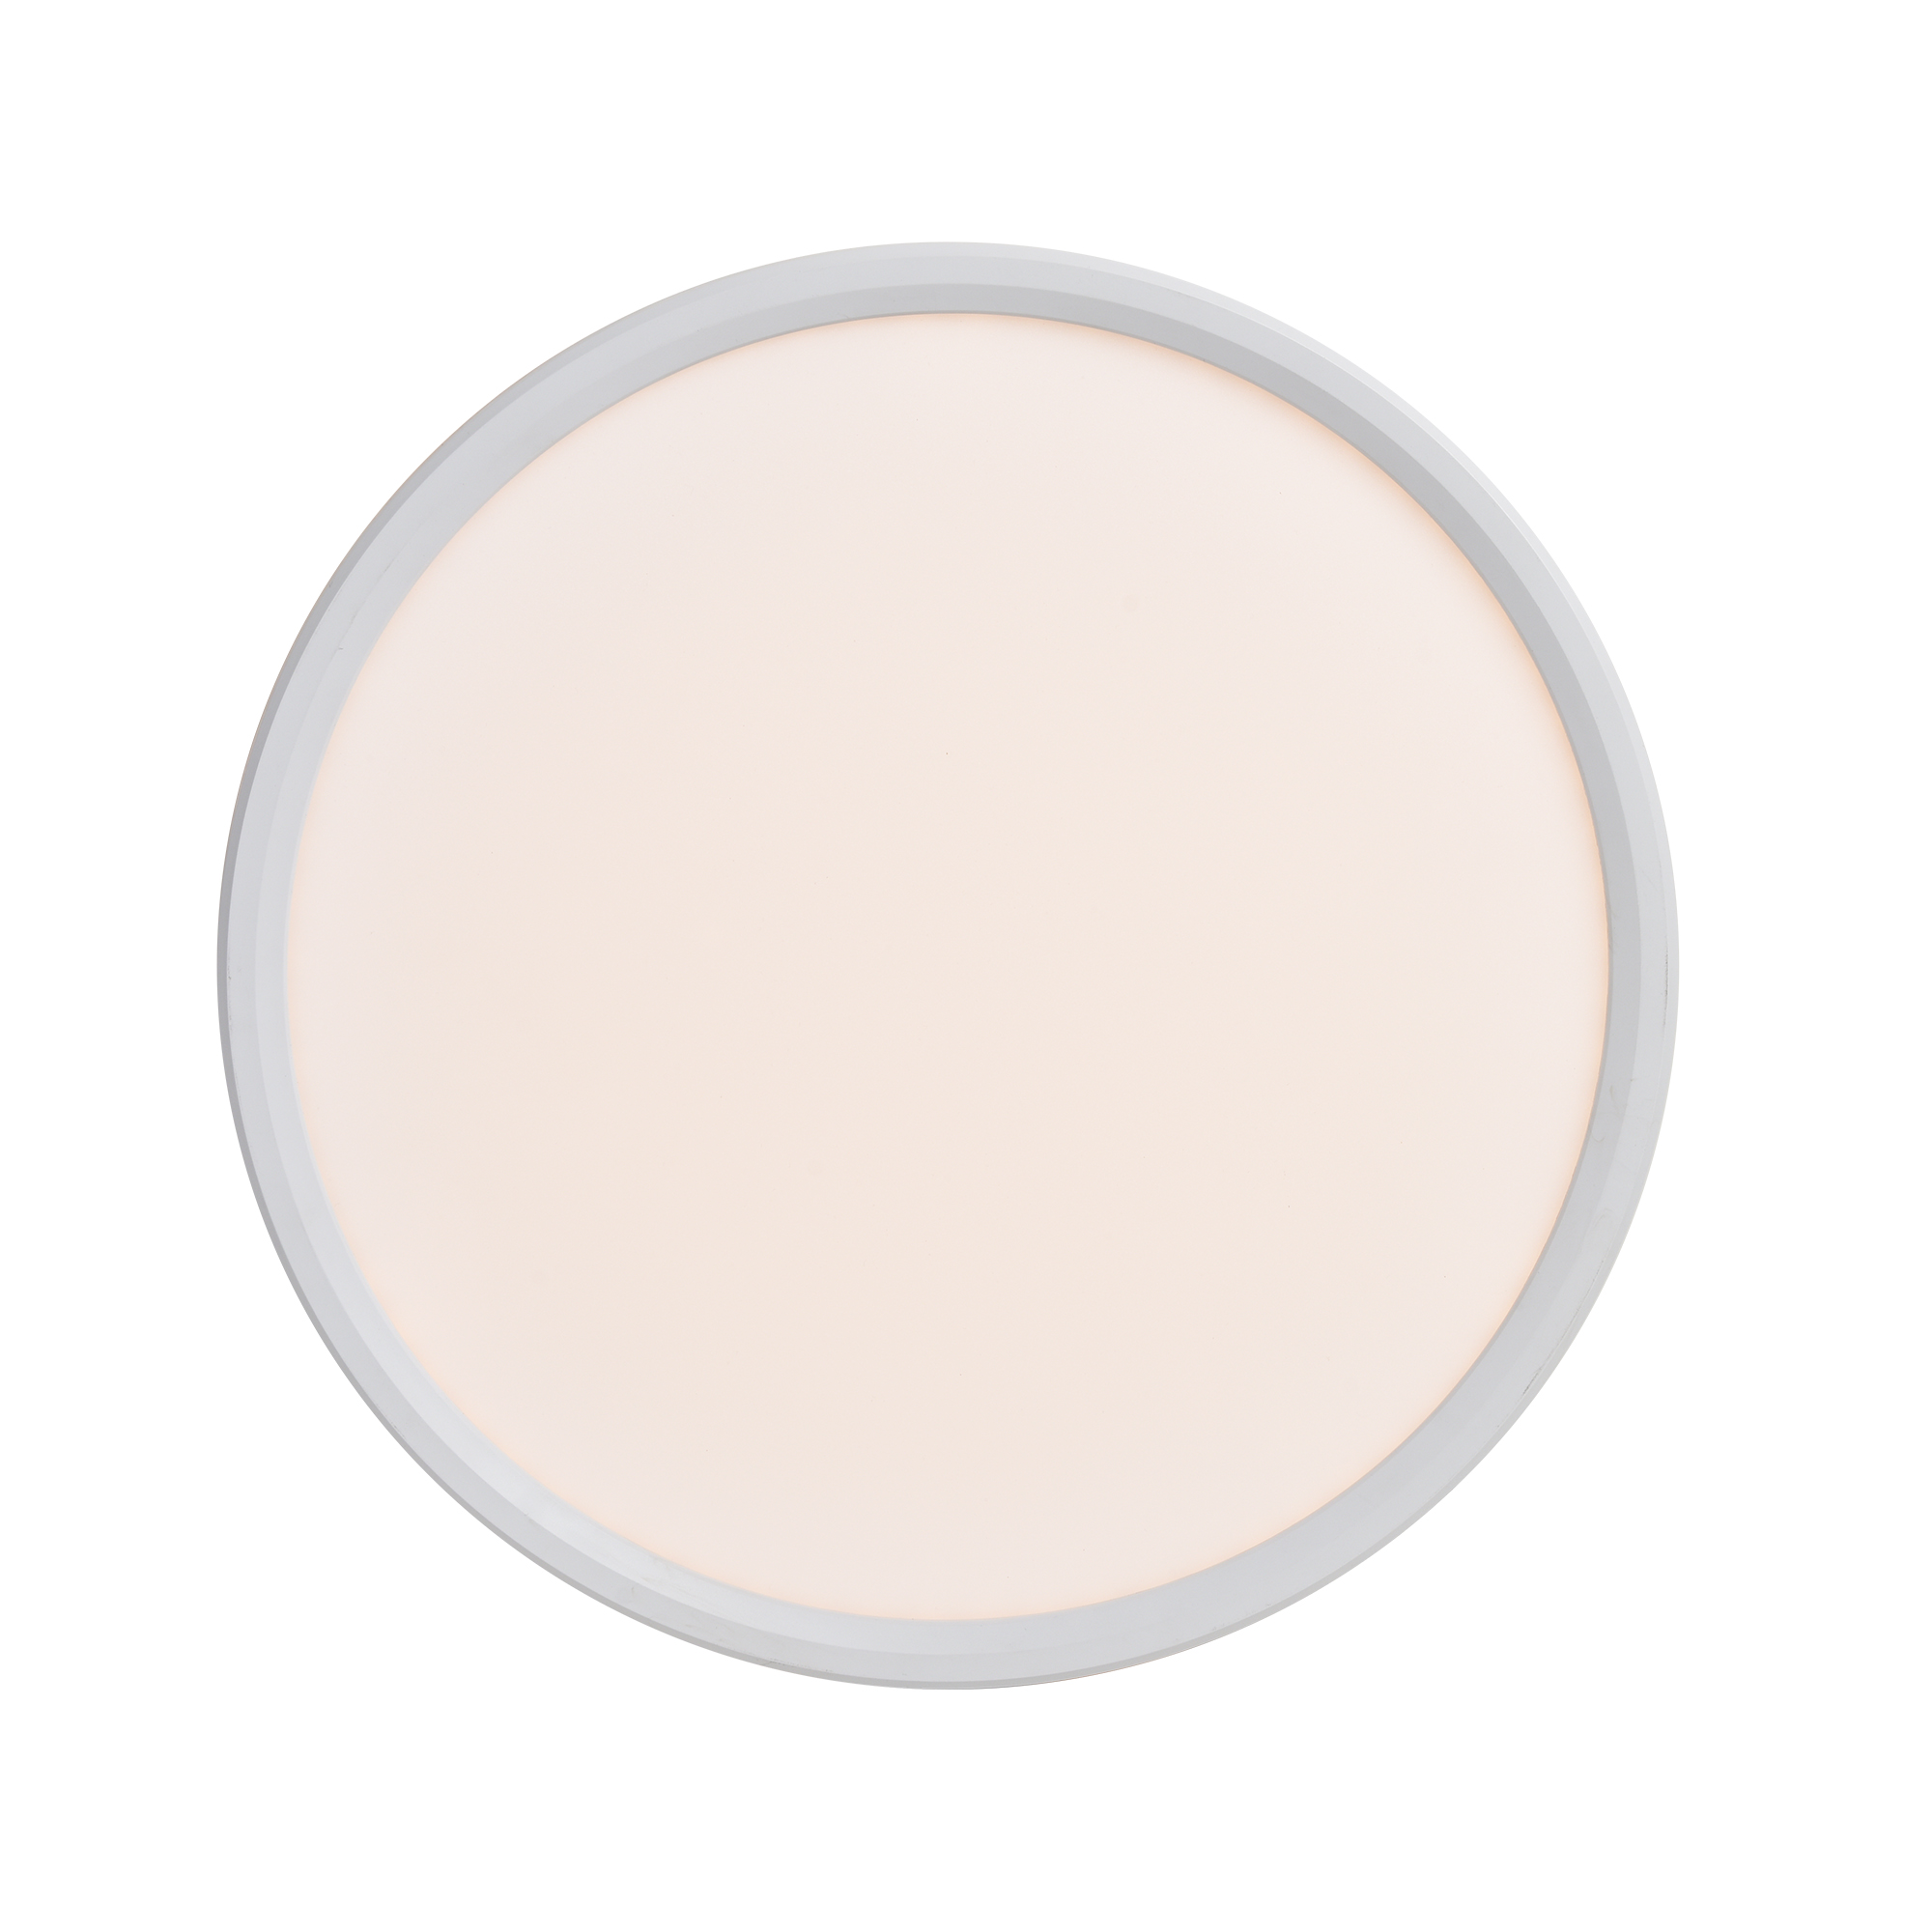 Liva Smart Colour | Ceiling light | White